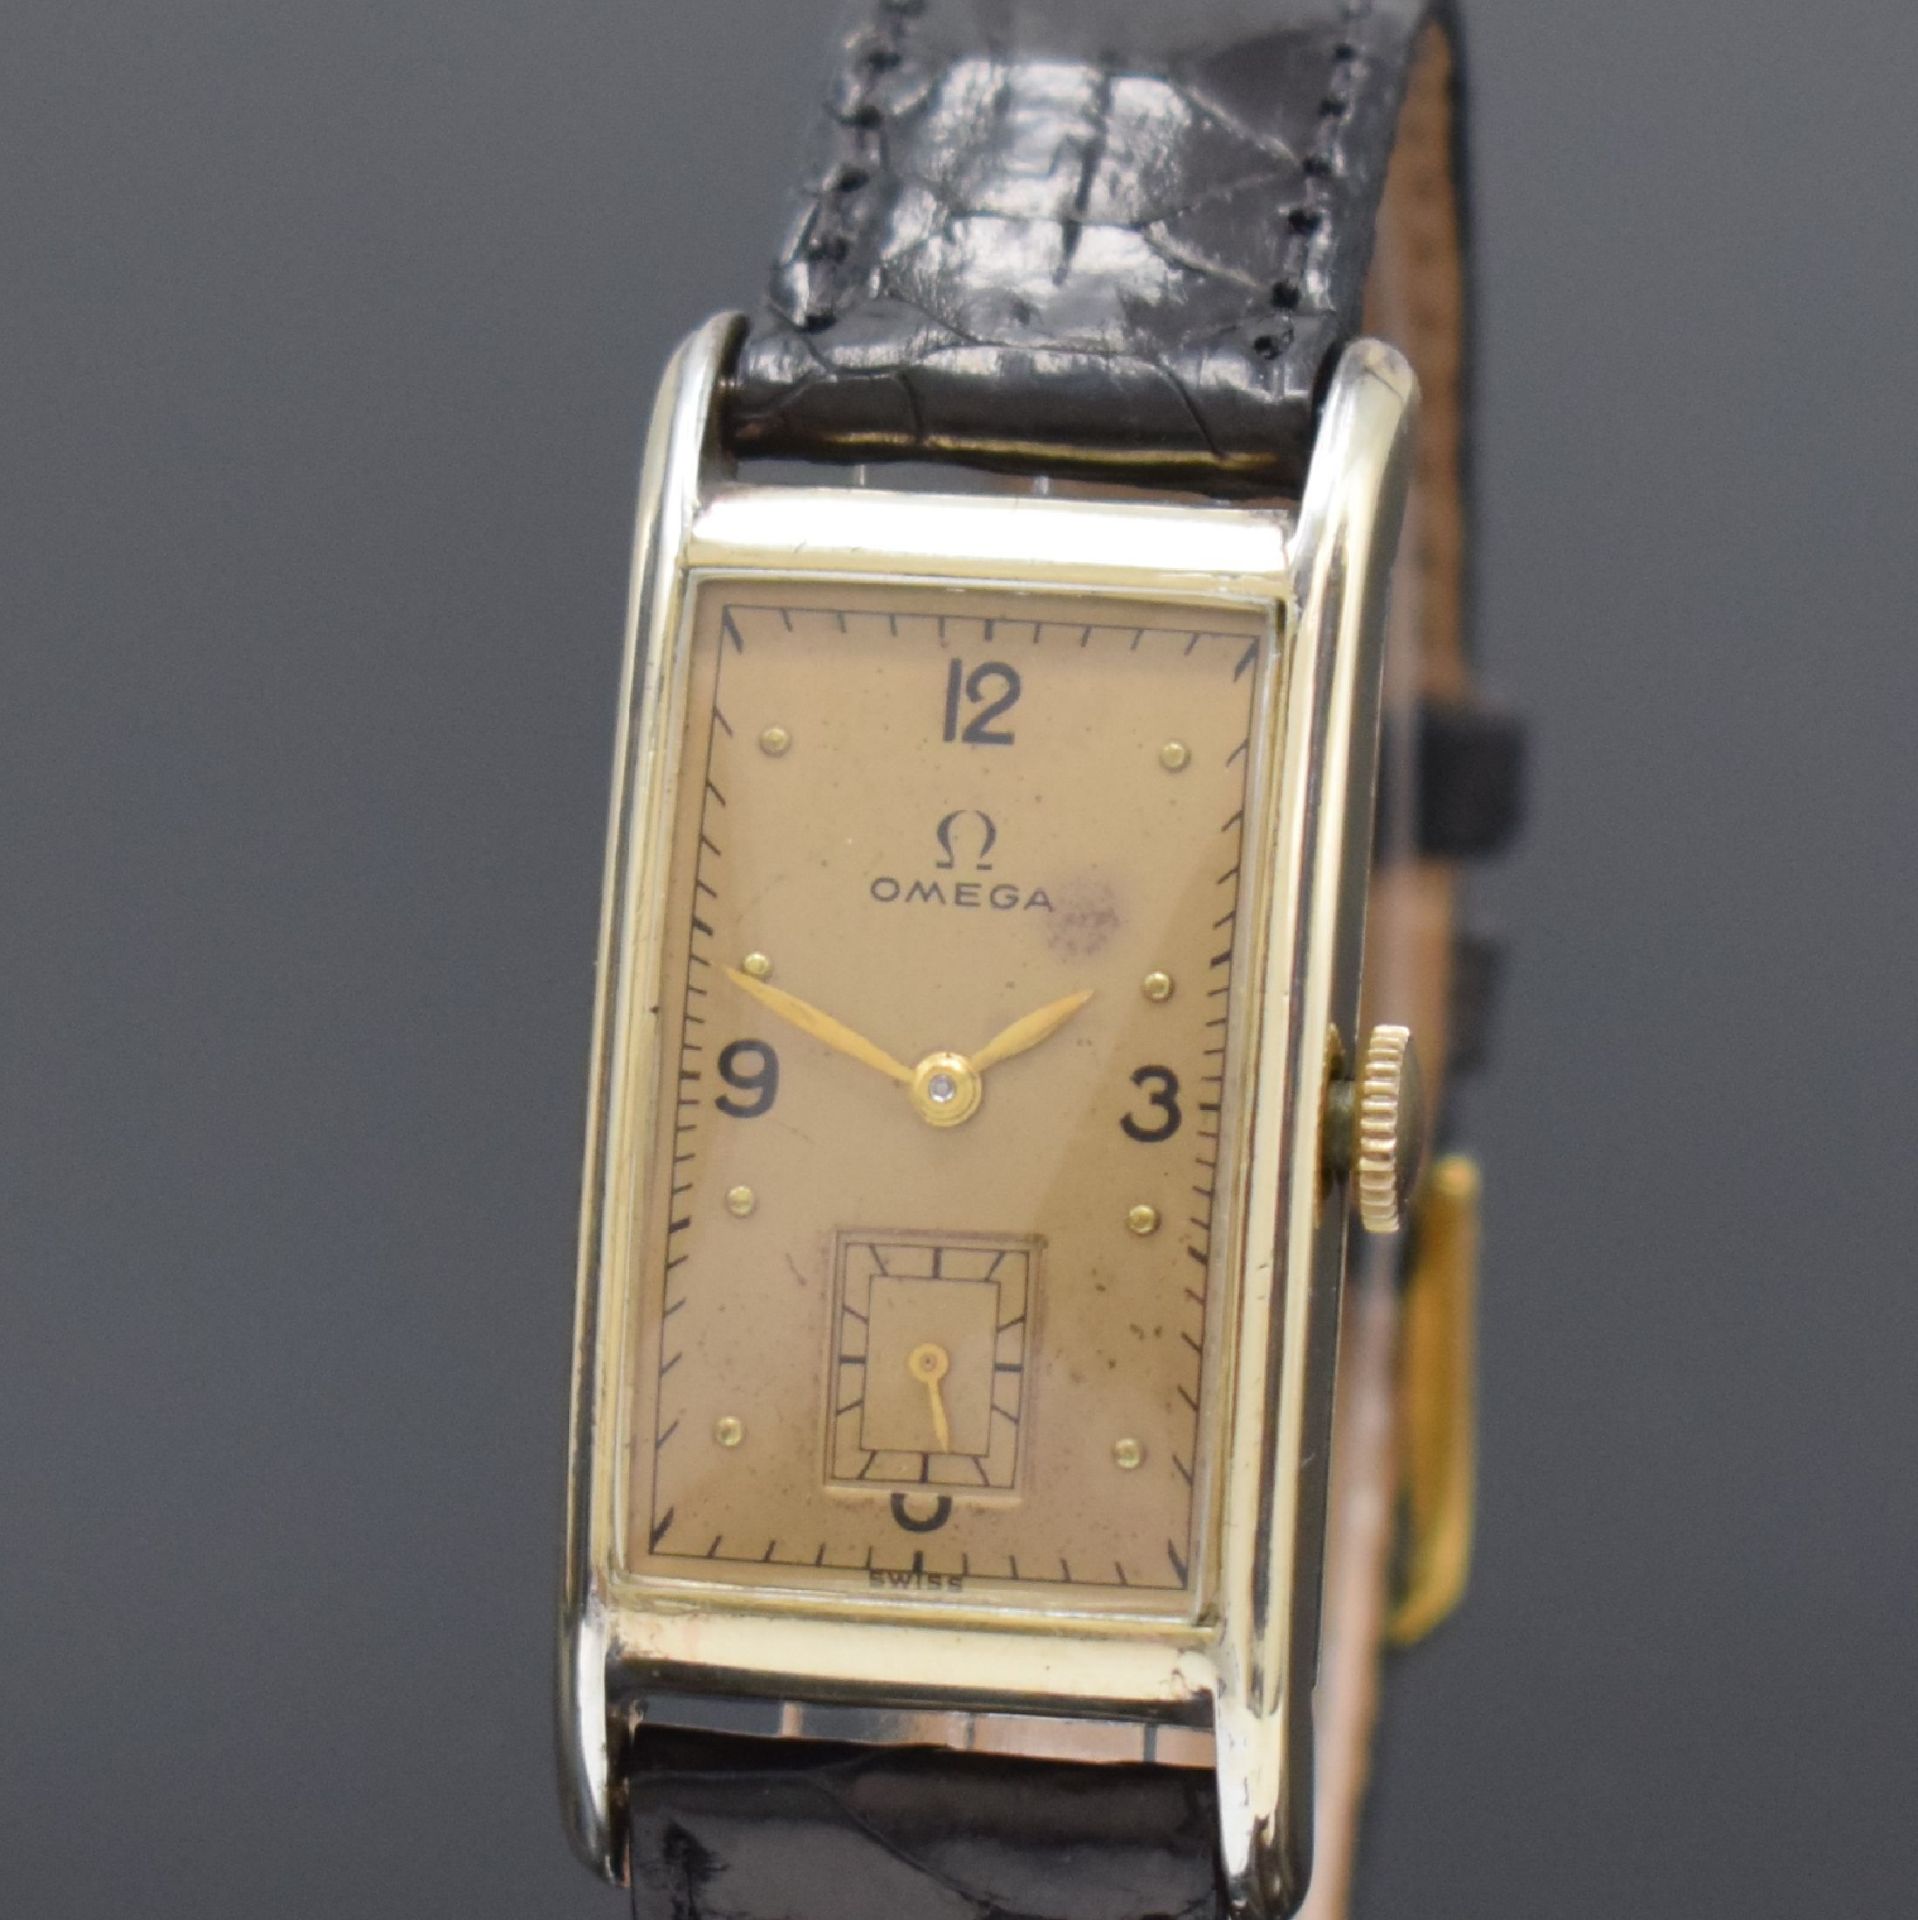 OMEGA T 17 rechteckige Armbanduhr in 14k goldfilled, - Bild 2 aus 7